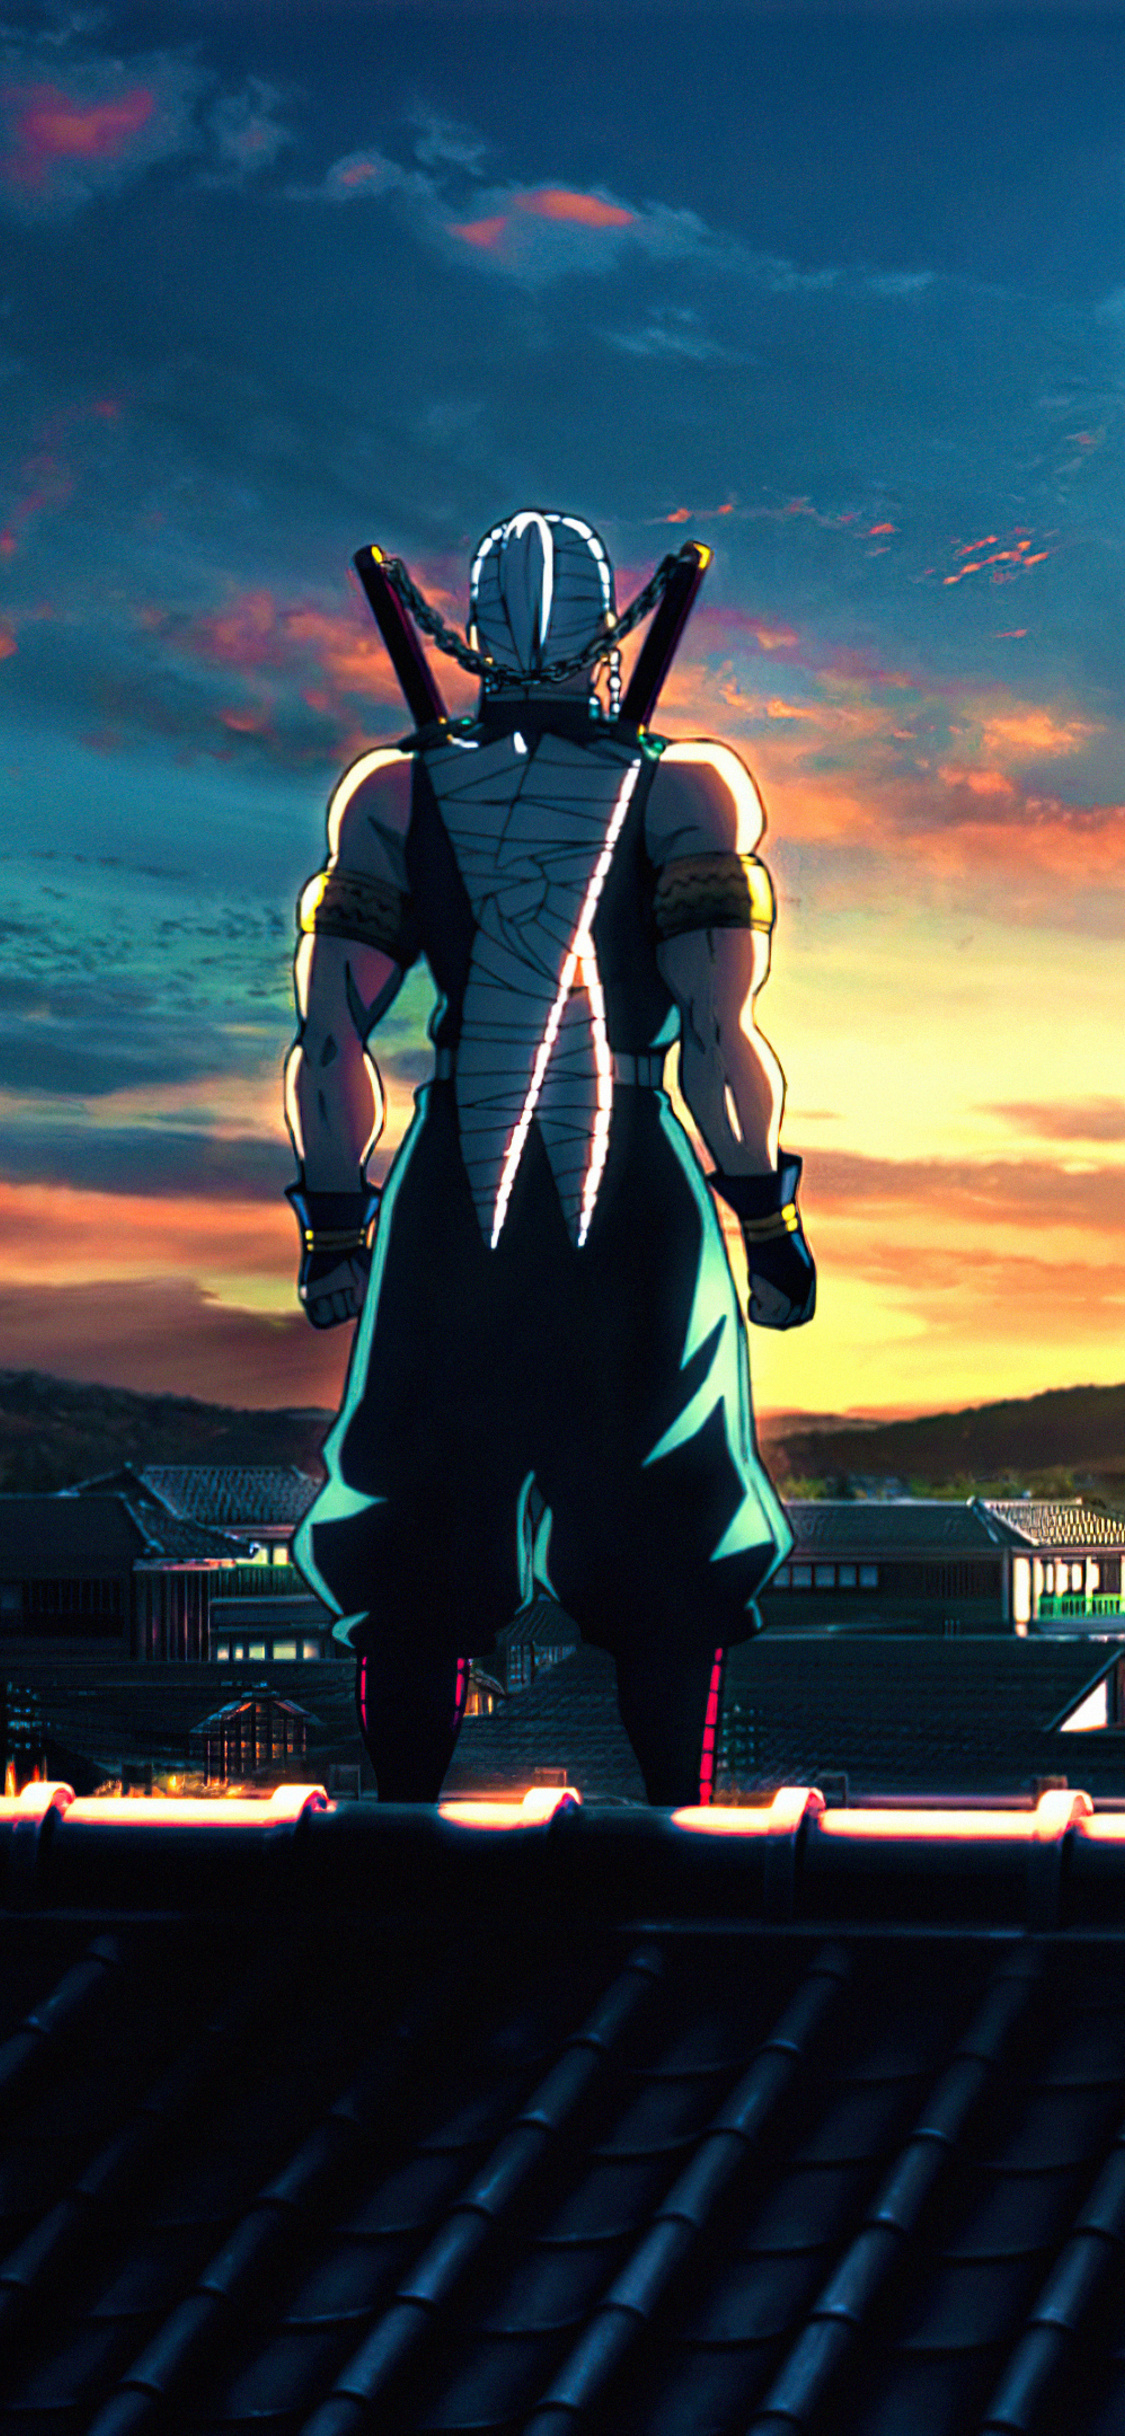 Demon Slayer Kimetsu no Yaiba iPhone Wallpaper 4K